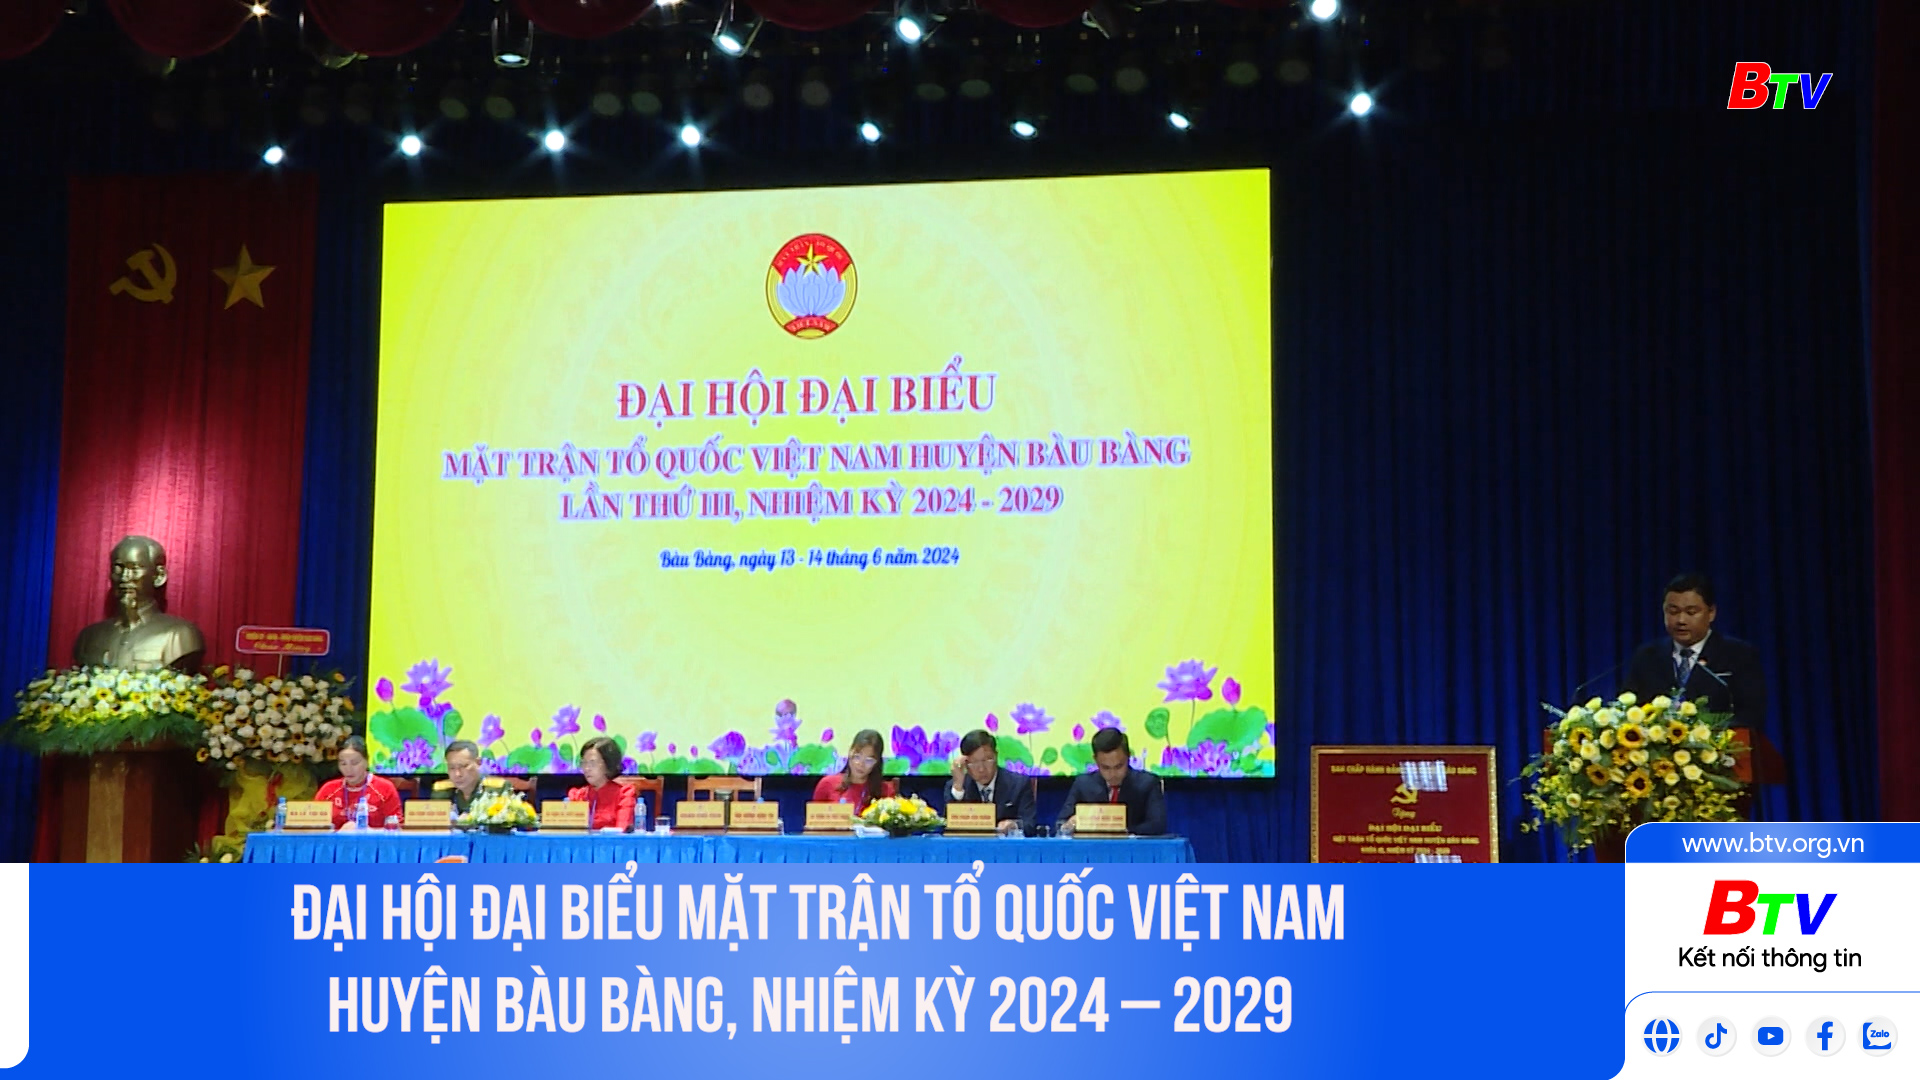 Đại hội đại biểu Mặt trận Tổ quốc Việt Nam huyện Bàu Bàng, nhiệm kỳ 2024 – 2029